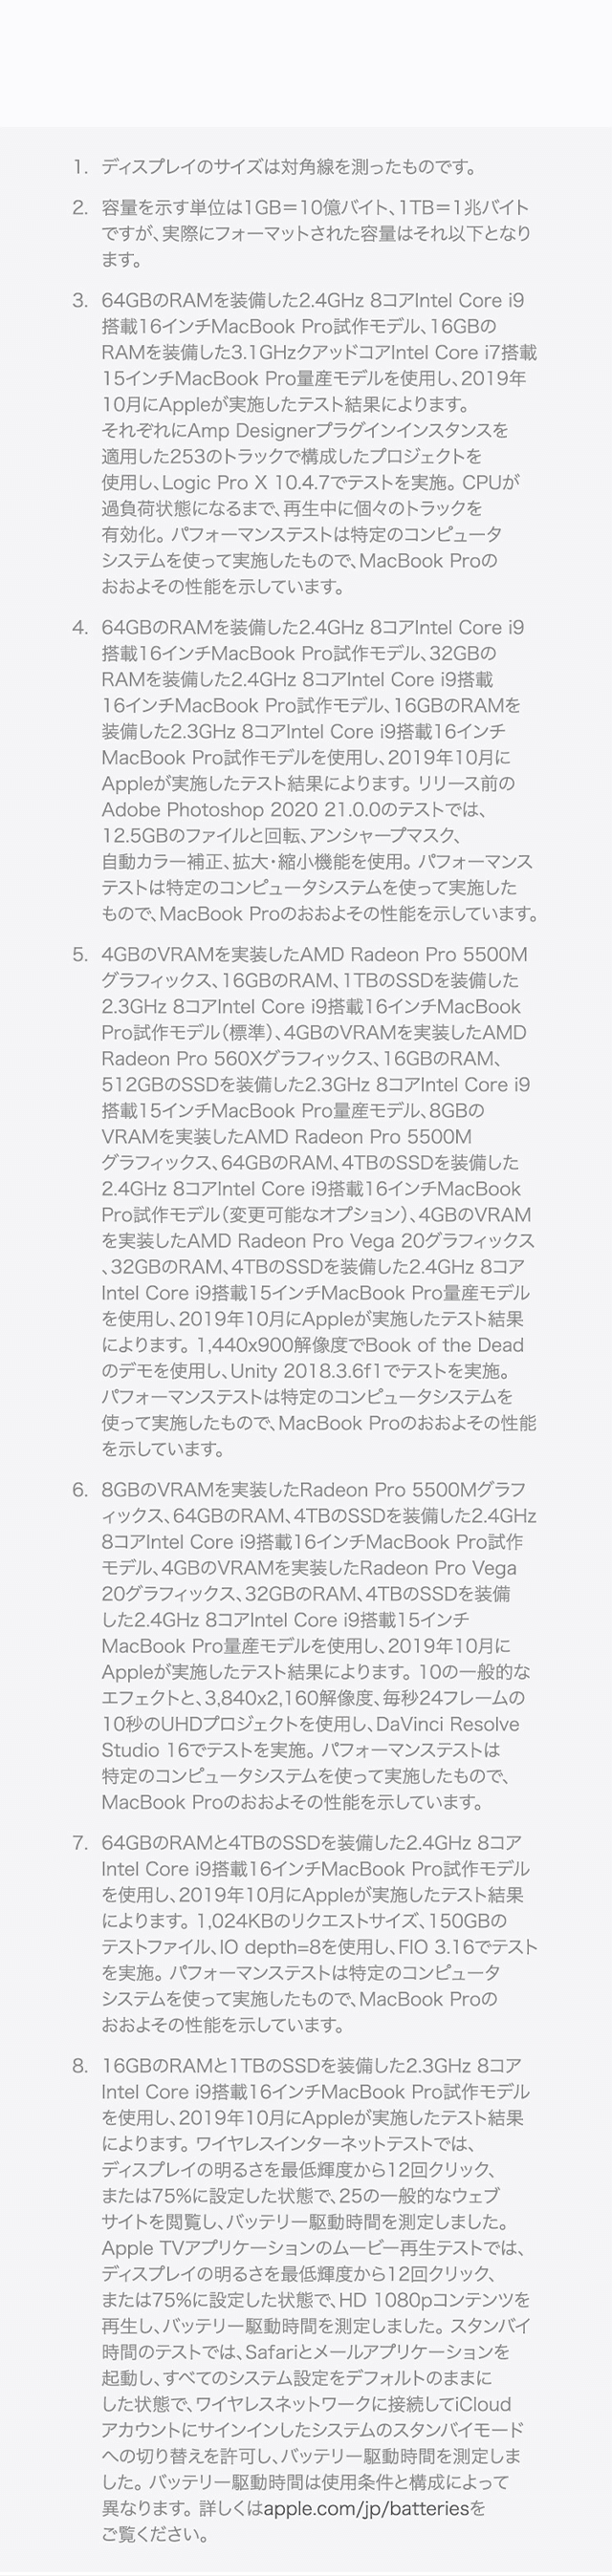 MacBook Pro 16inch